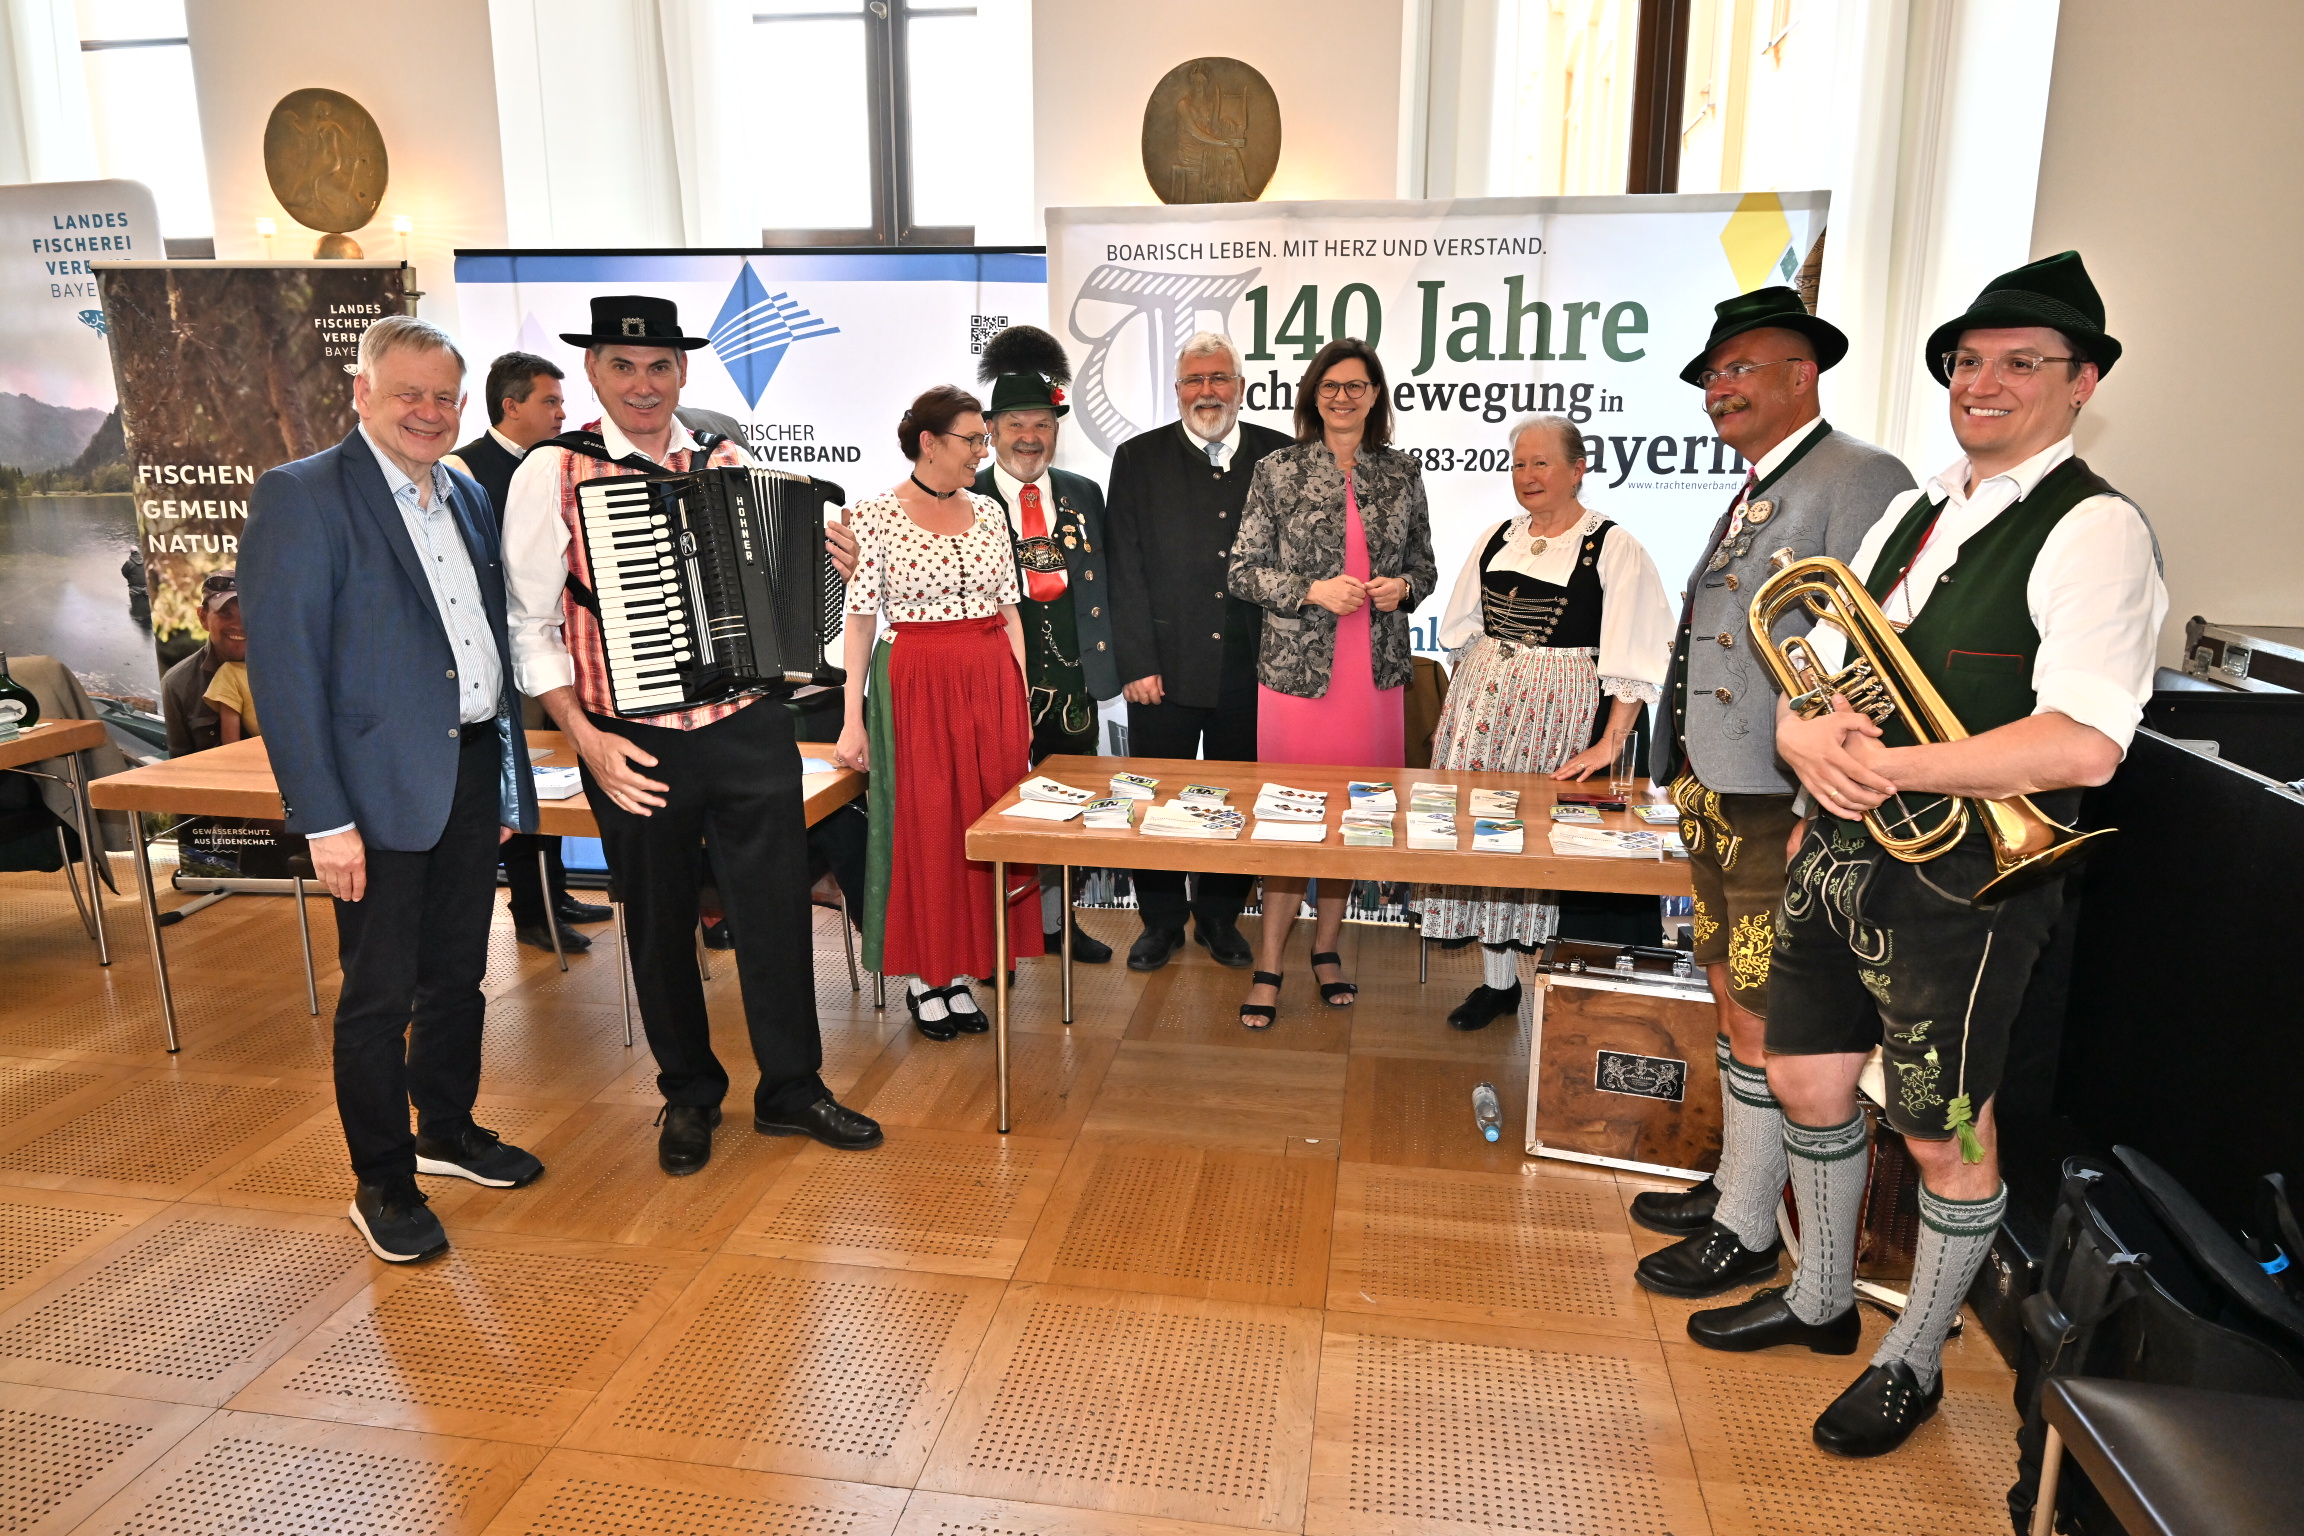 Karl Freller in geselliger Runde auf dem Informationstag der Bürgerallianz Bayern